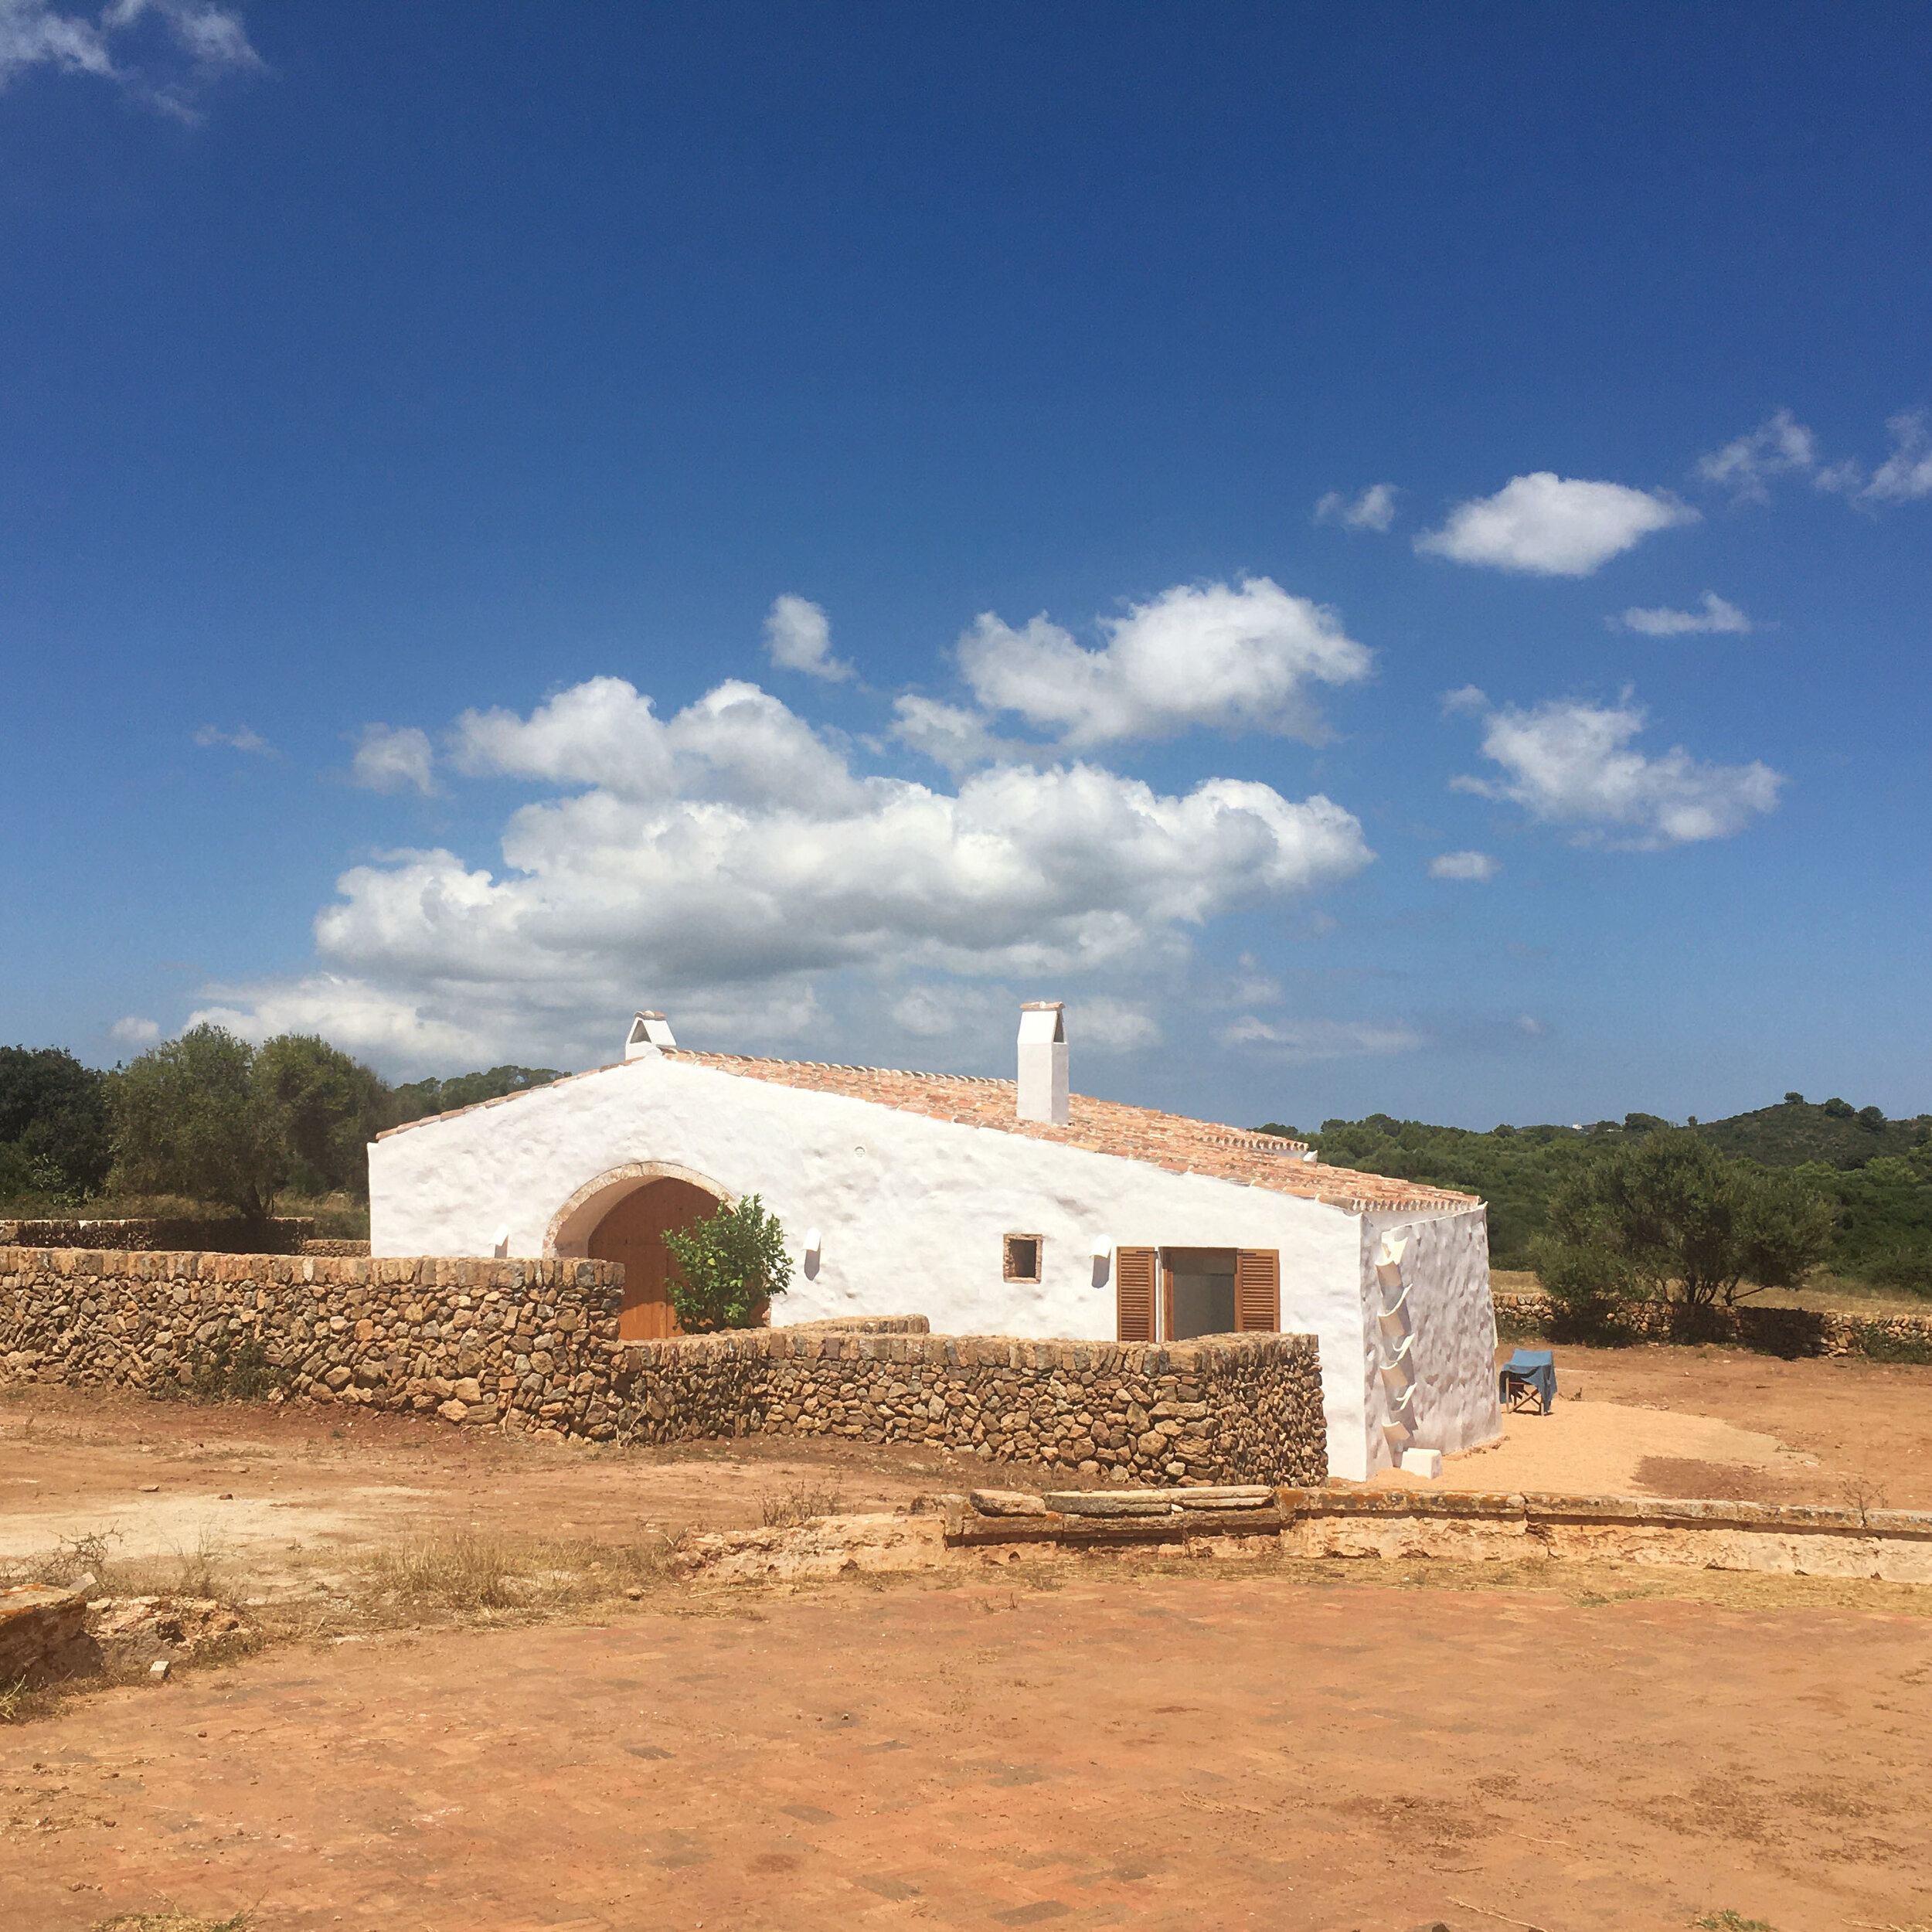    El Refugio  Menorca 2019 - 2020  